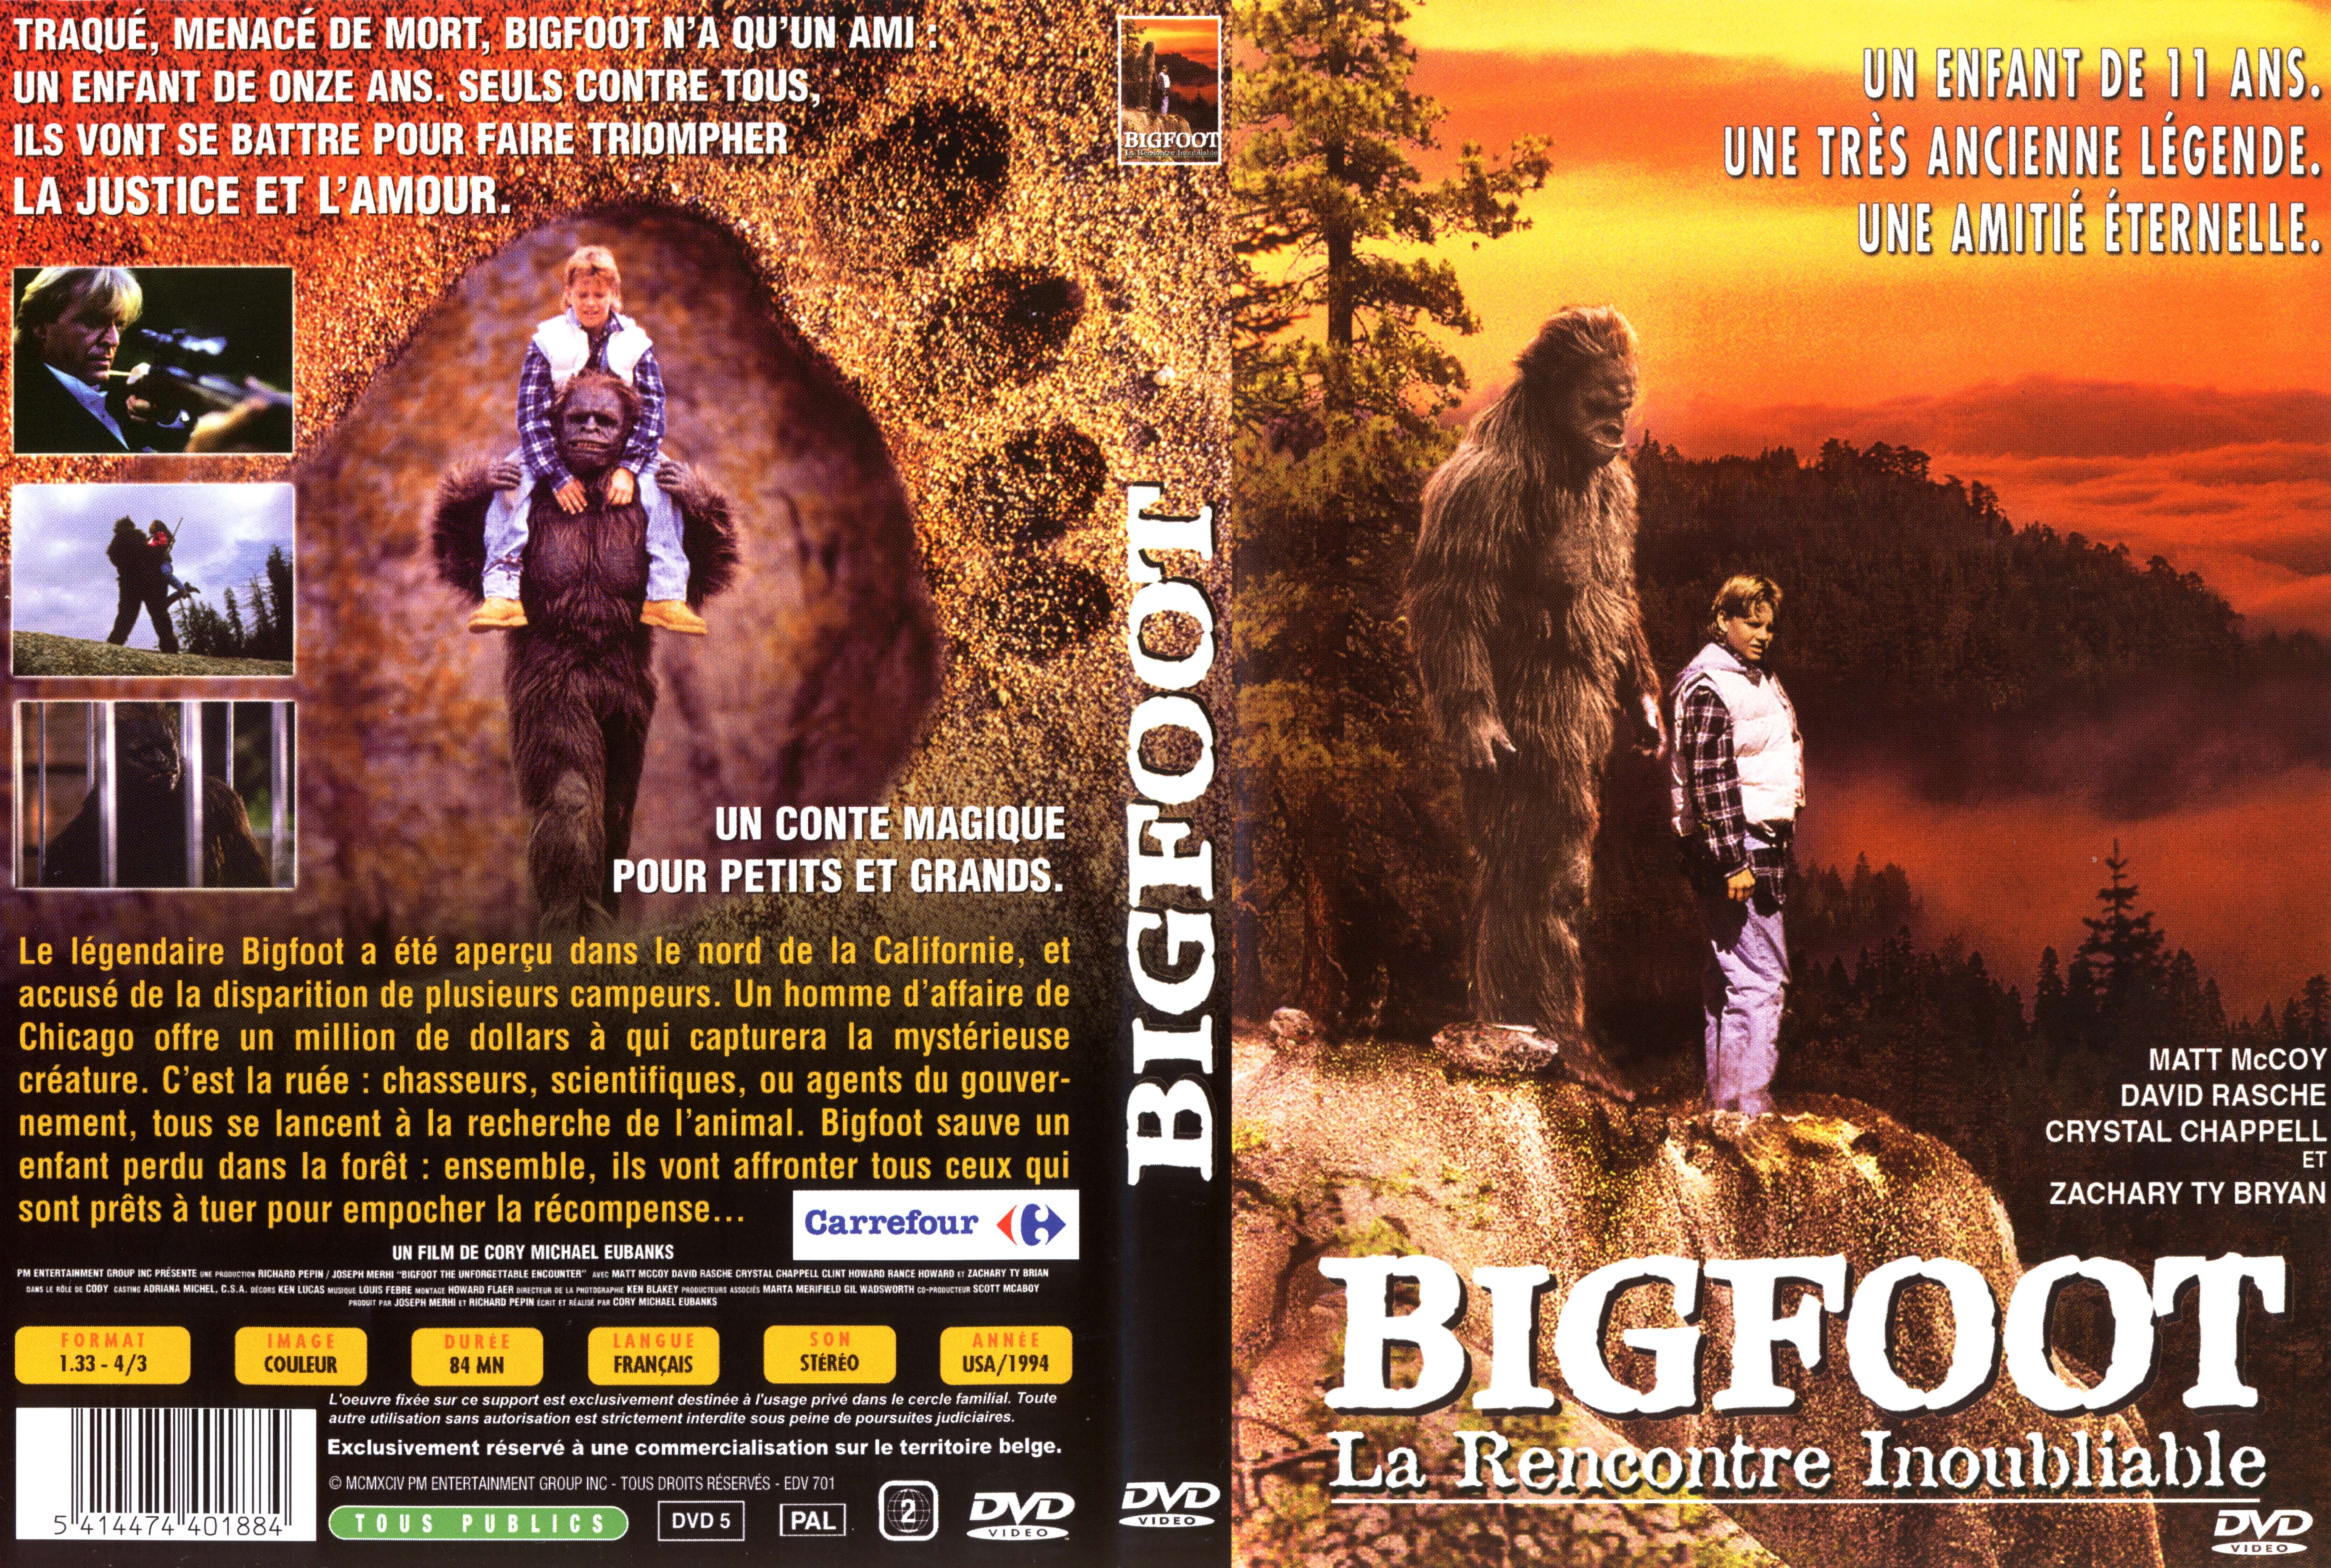 Jaquette DVD Bigfoot La rencontre inoubliable